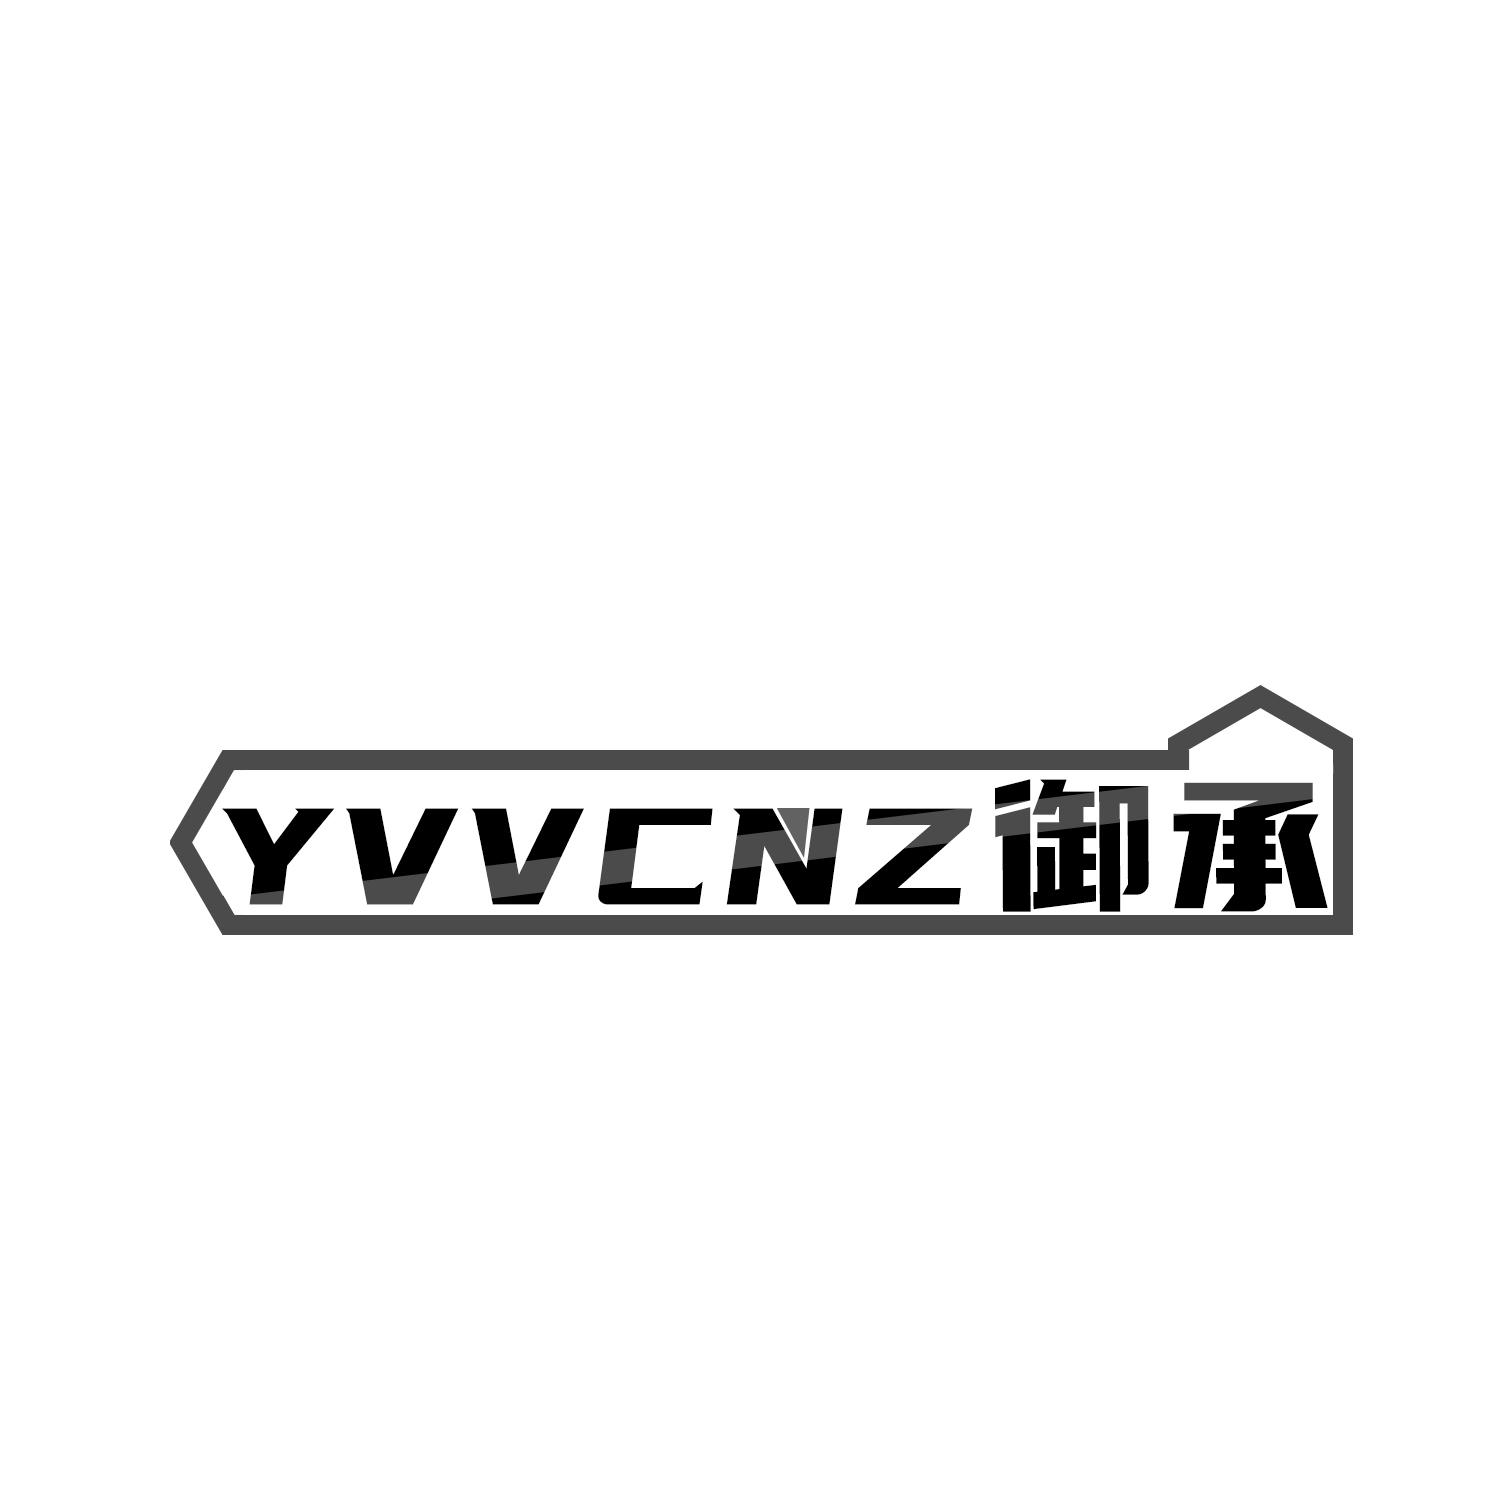 19类-建筑材料YVVCNZ 御承商标转让